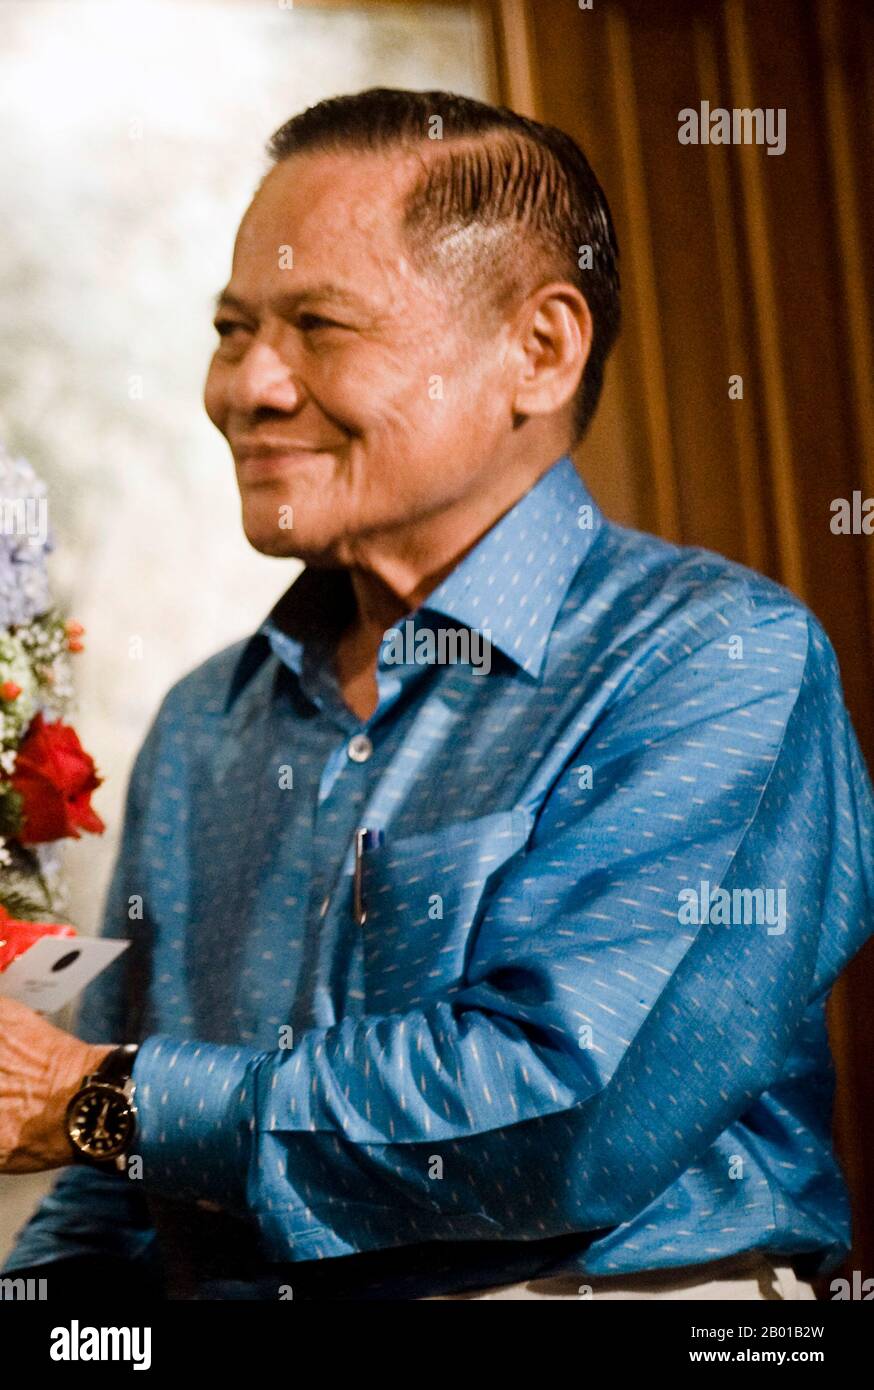 Thailand: Banharn Silpa-archa (19. August 1932 - 23. April 2016), Premierminister von Thailand (r. 1995-1996). Foto von Peerapat Wimonrangcarat/Govt. Von Thailand, 2009. Banharn Silpa-archa war vom 13. Juli 1995 bis zum 21. 24. November 1996 Premierminister von Thailand. Seit 1976 war er ein altgedienter chinesisch-thailändischer Abgeordneter des Parlaments als gewählter Vertreter der Provinz Suphanburi. Er hatte sein Vermögen im Bauwesen gemacht, bevor er in die Politik eintrat, und hatte verschiedene Kabinettsämter in mehreren Regierungen inne. Während seiner Amtszeit war er in verschiedene Korruptionsskandale verwickelt, die ihn zum Rücktritt veranlasste. Stockfoto